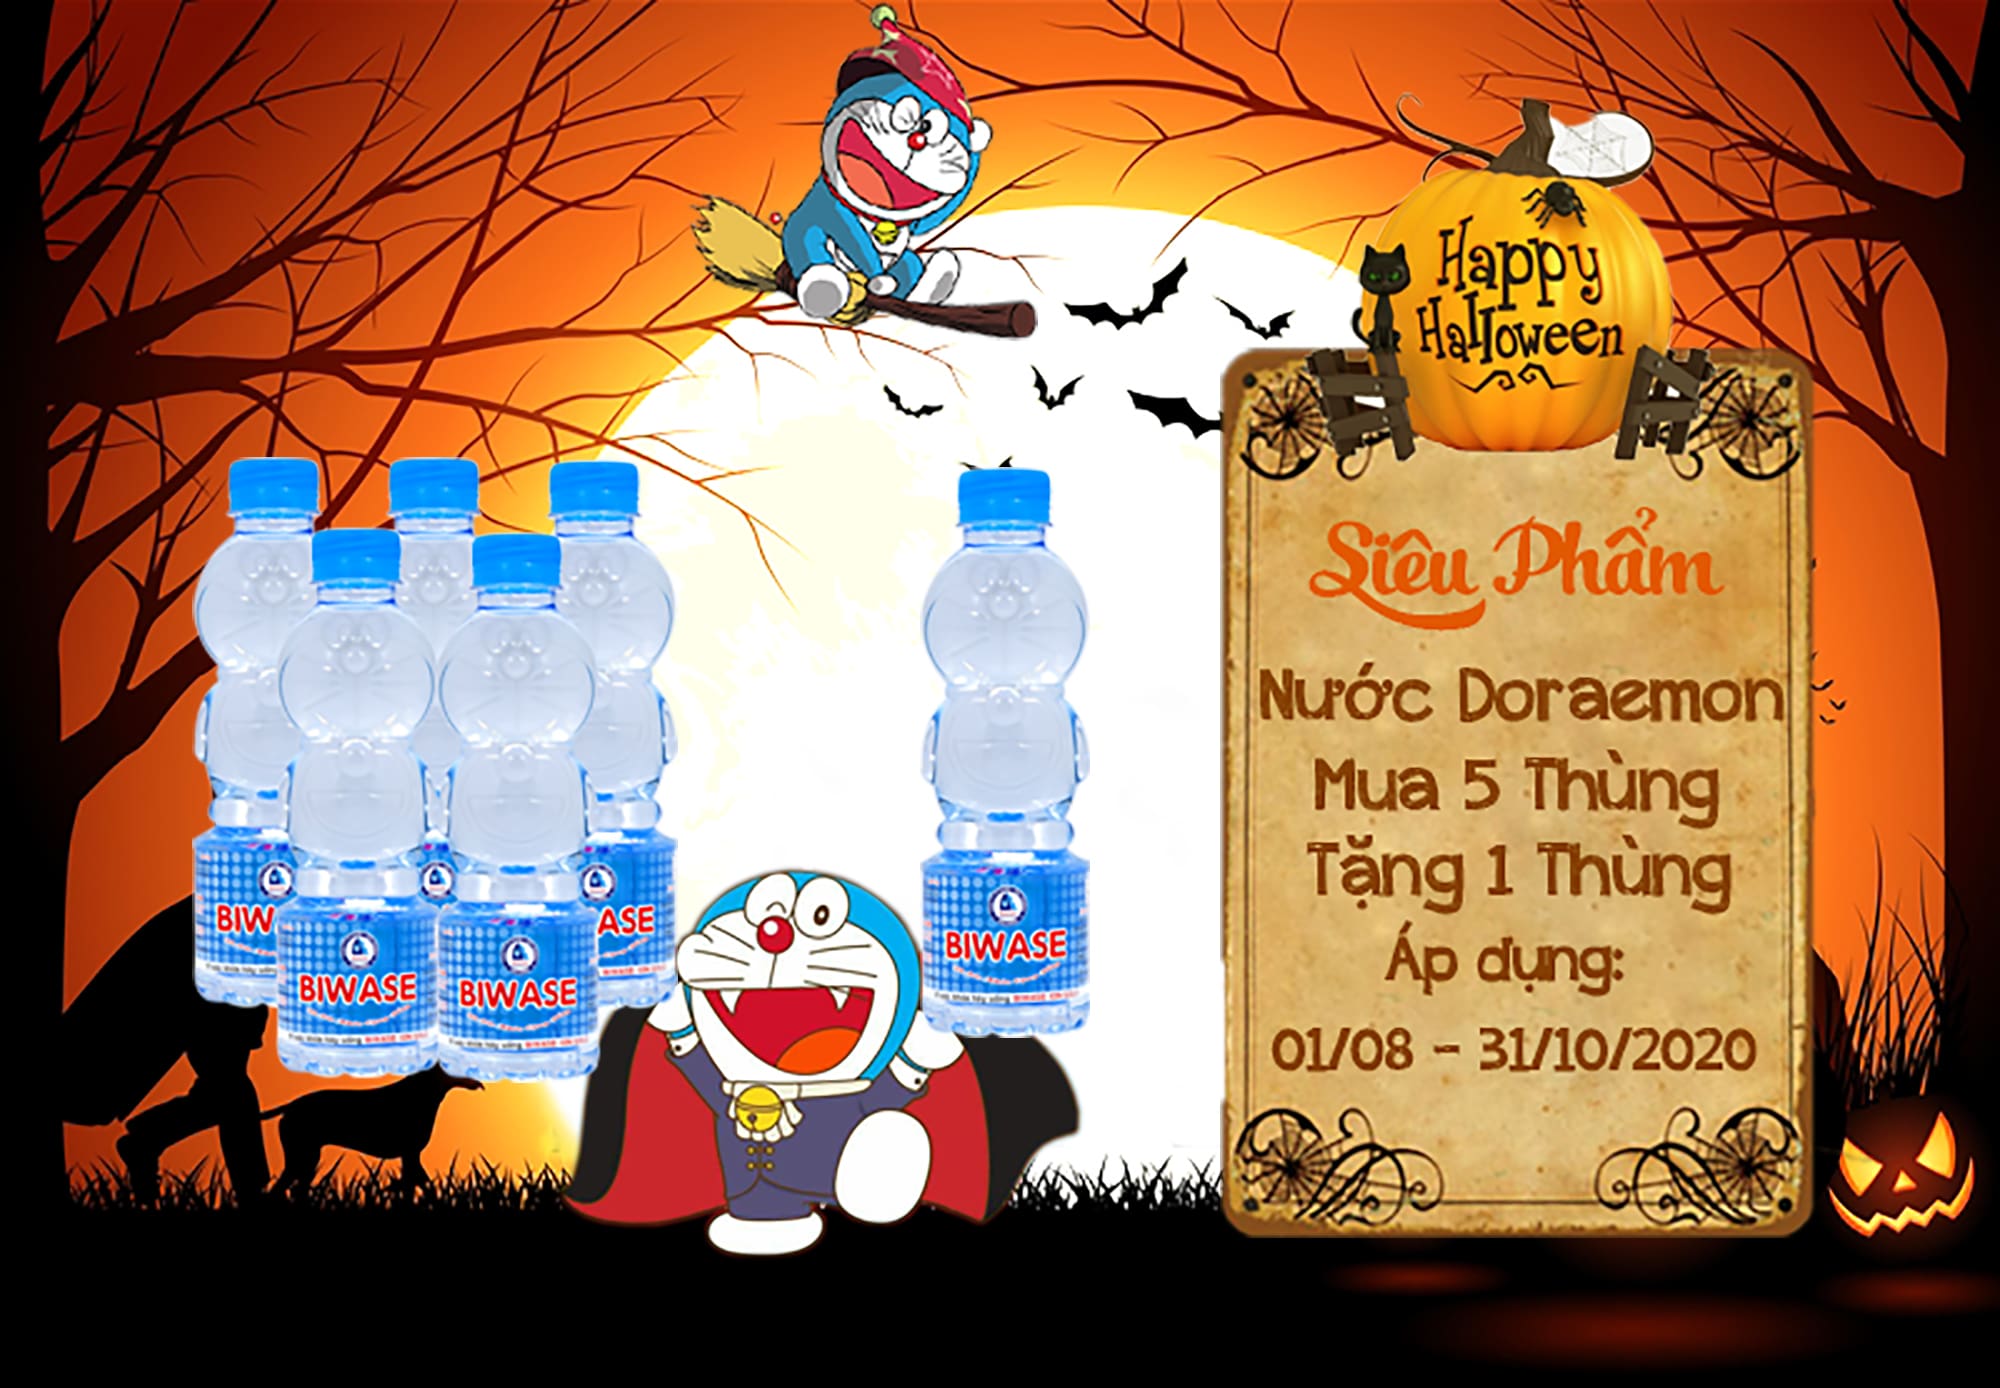 Nước Doraemon ưu đãi mua 5 thùng tặng 1 thùng 